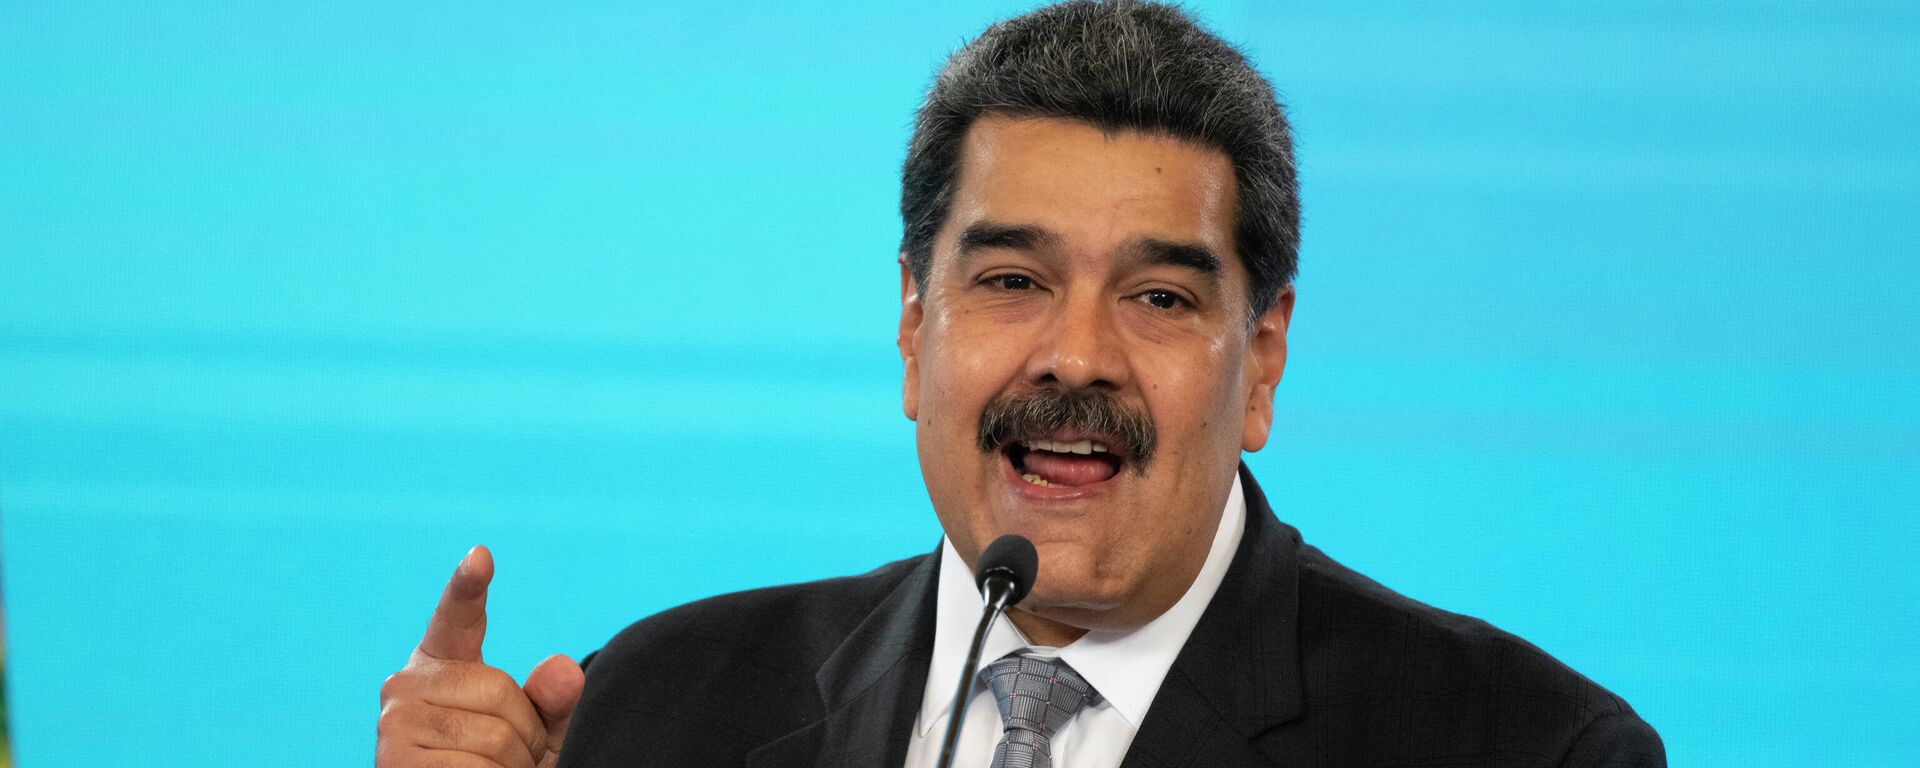 Nicolás Maduro, presidente de Venezuela - Sputnik Mundo, 1920, 08.06.2021